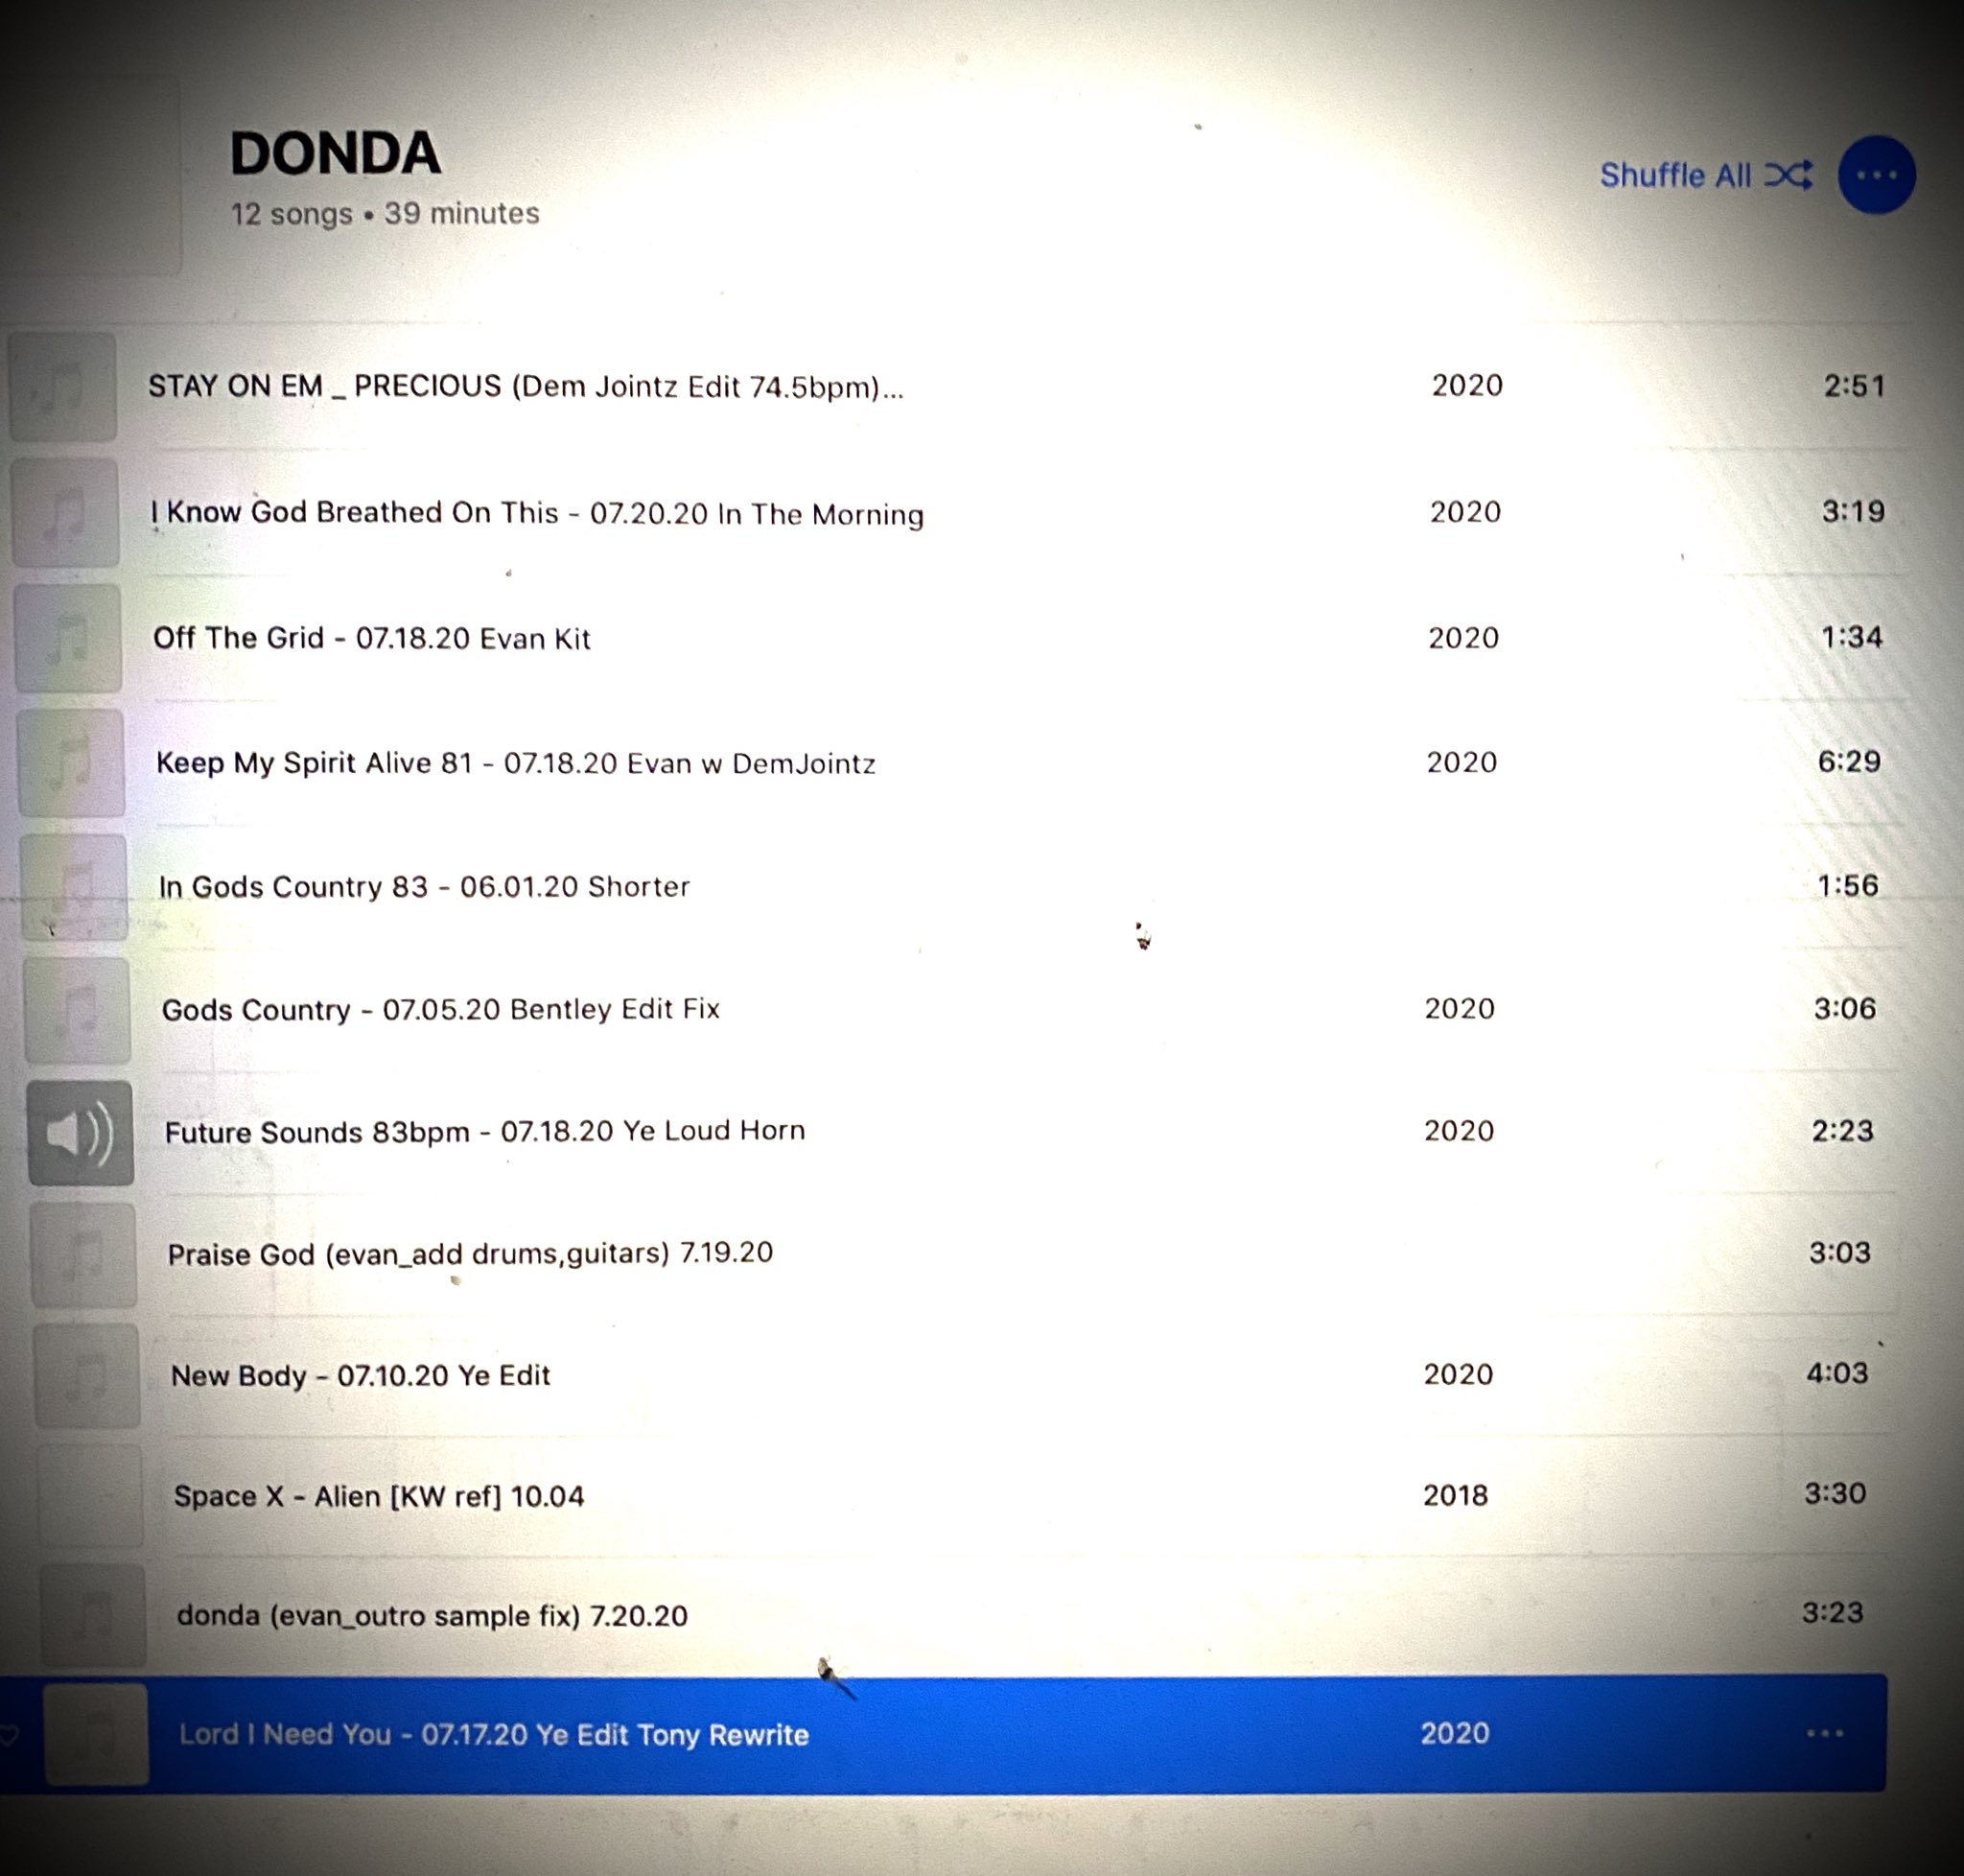 Канье Уэст показал треклист альбома "DONDA" и задиссил семейство ...